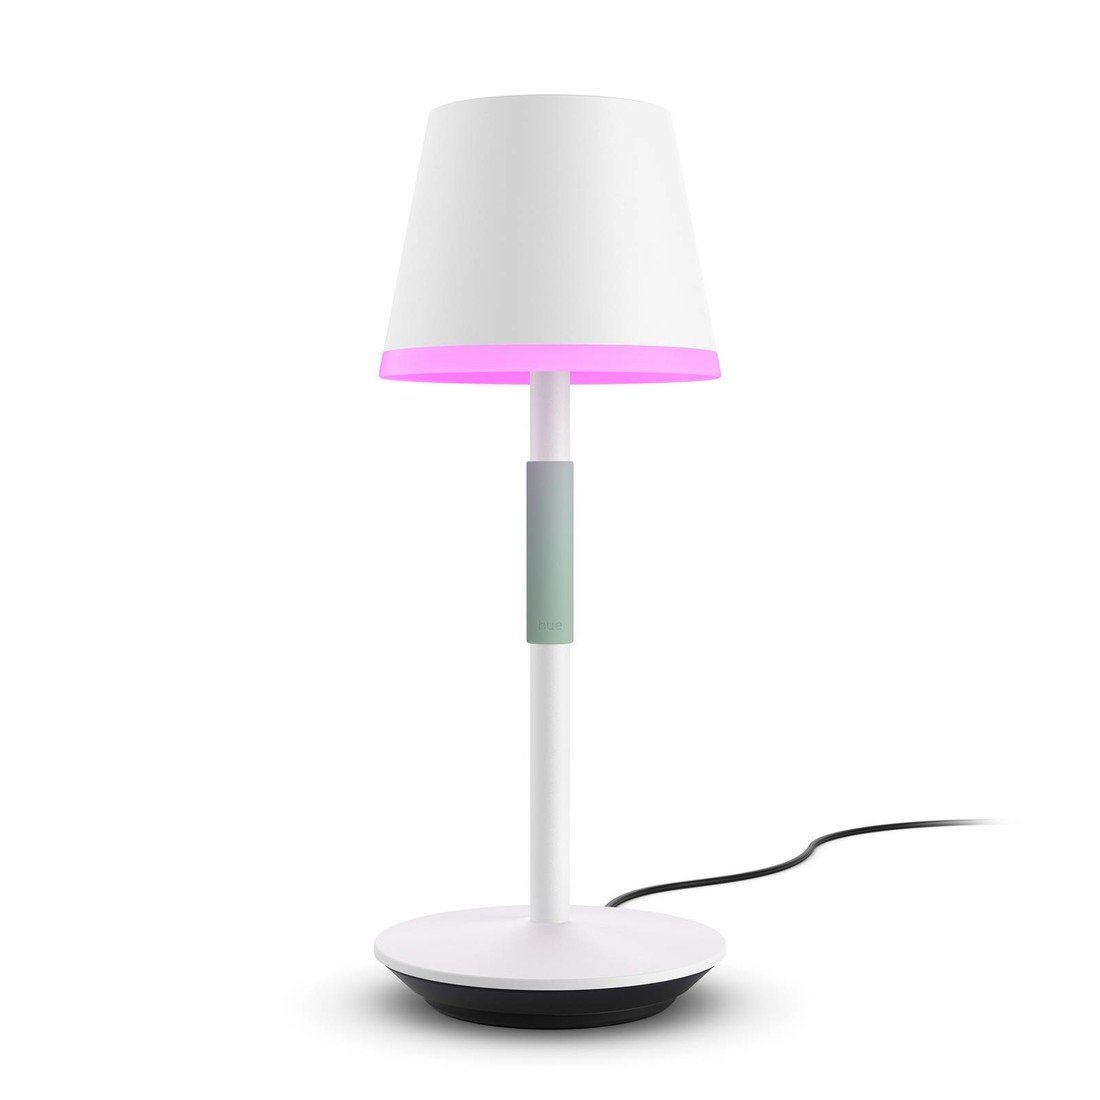 Philips Hue Go přenosná LED stolní lampa, bílá, Obývací pokoj / jídelna, hliník, silikon, 6.2W, K: 35cm